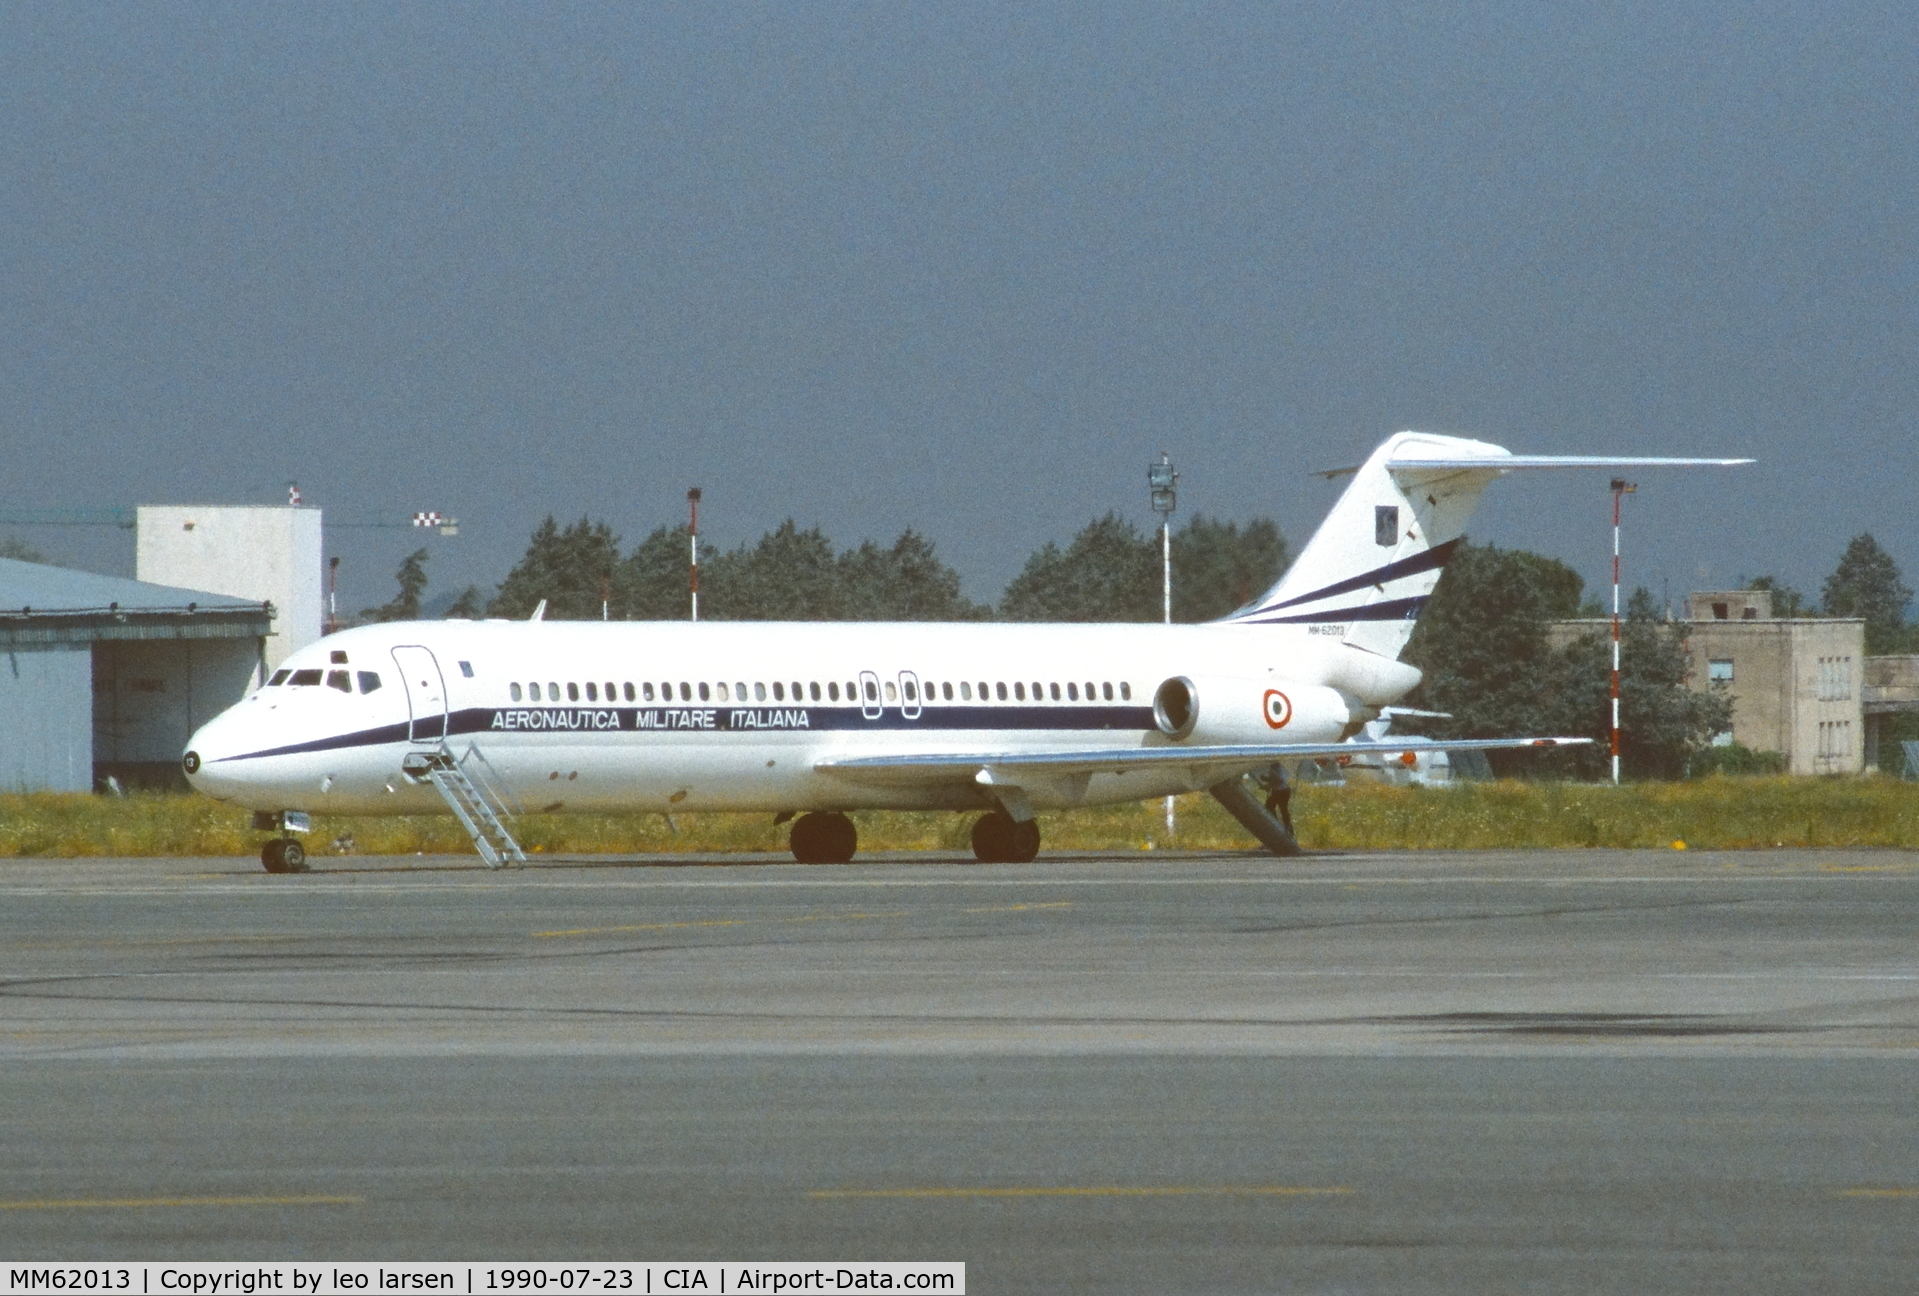 MM62013, 1974 Douglas DC-9-32 C/N 47600, Rome Ciampino 23.7.1990